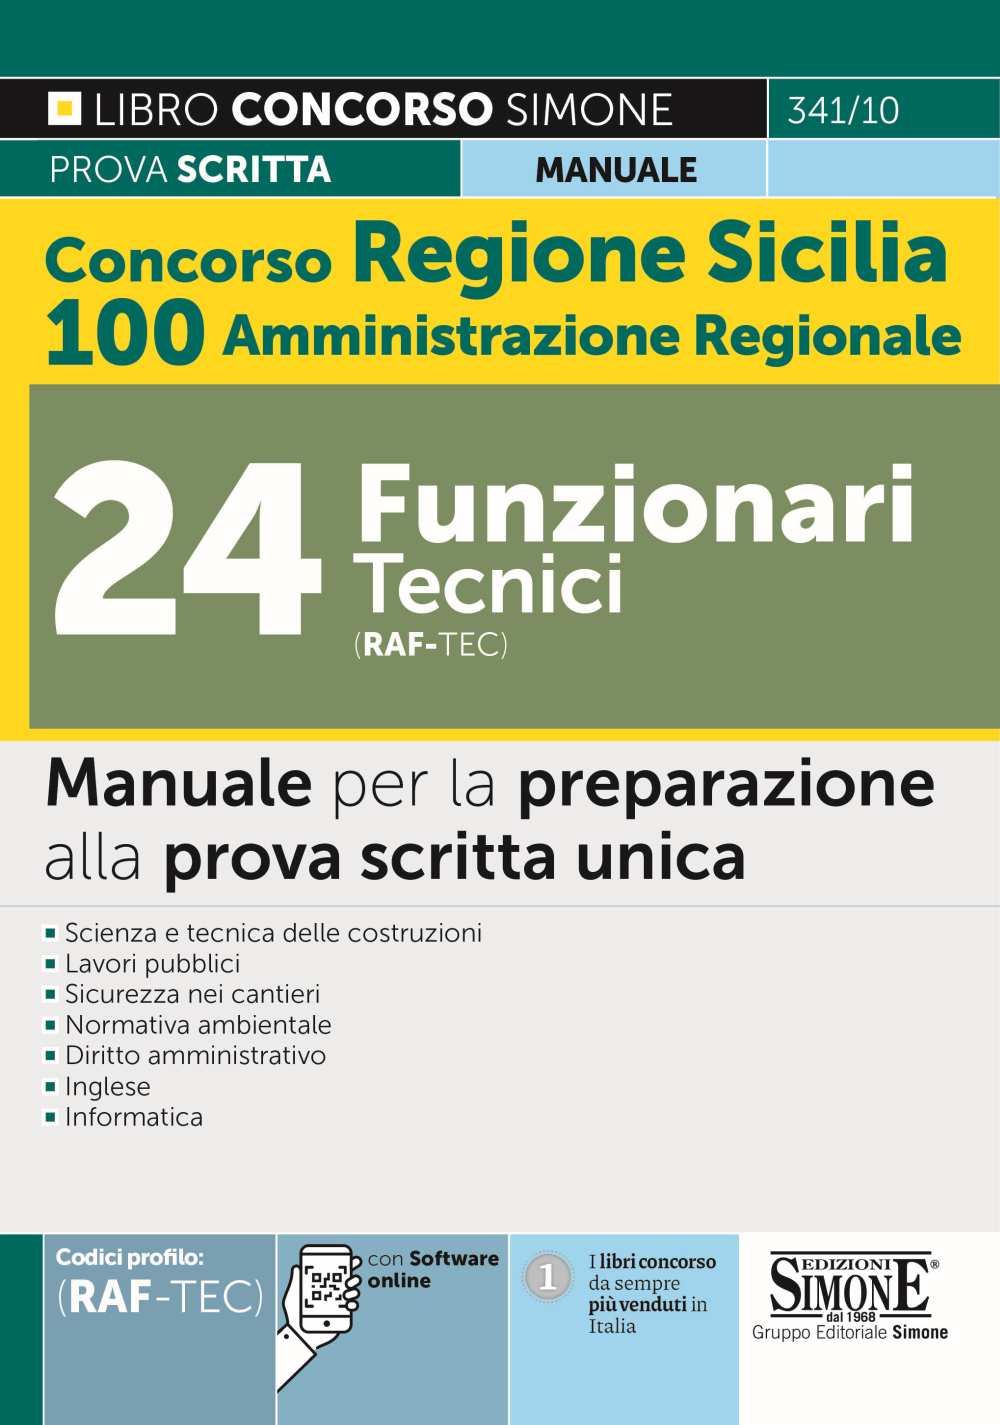 Concorso Regione Sicilia 100 posti Amministrazione Regionale - 24 Funzionari tecnici (cod. RAF/TEC) - Manuale - 341/10